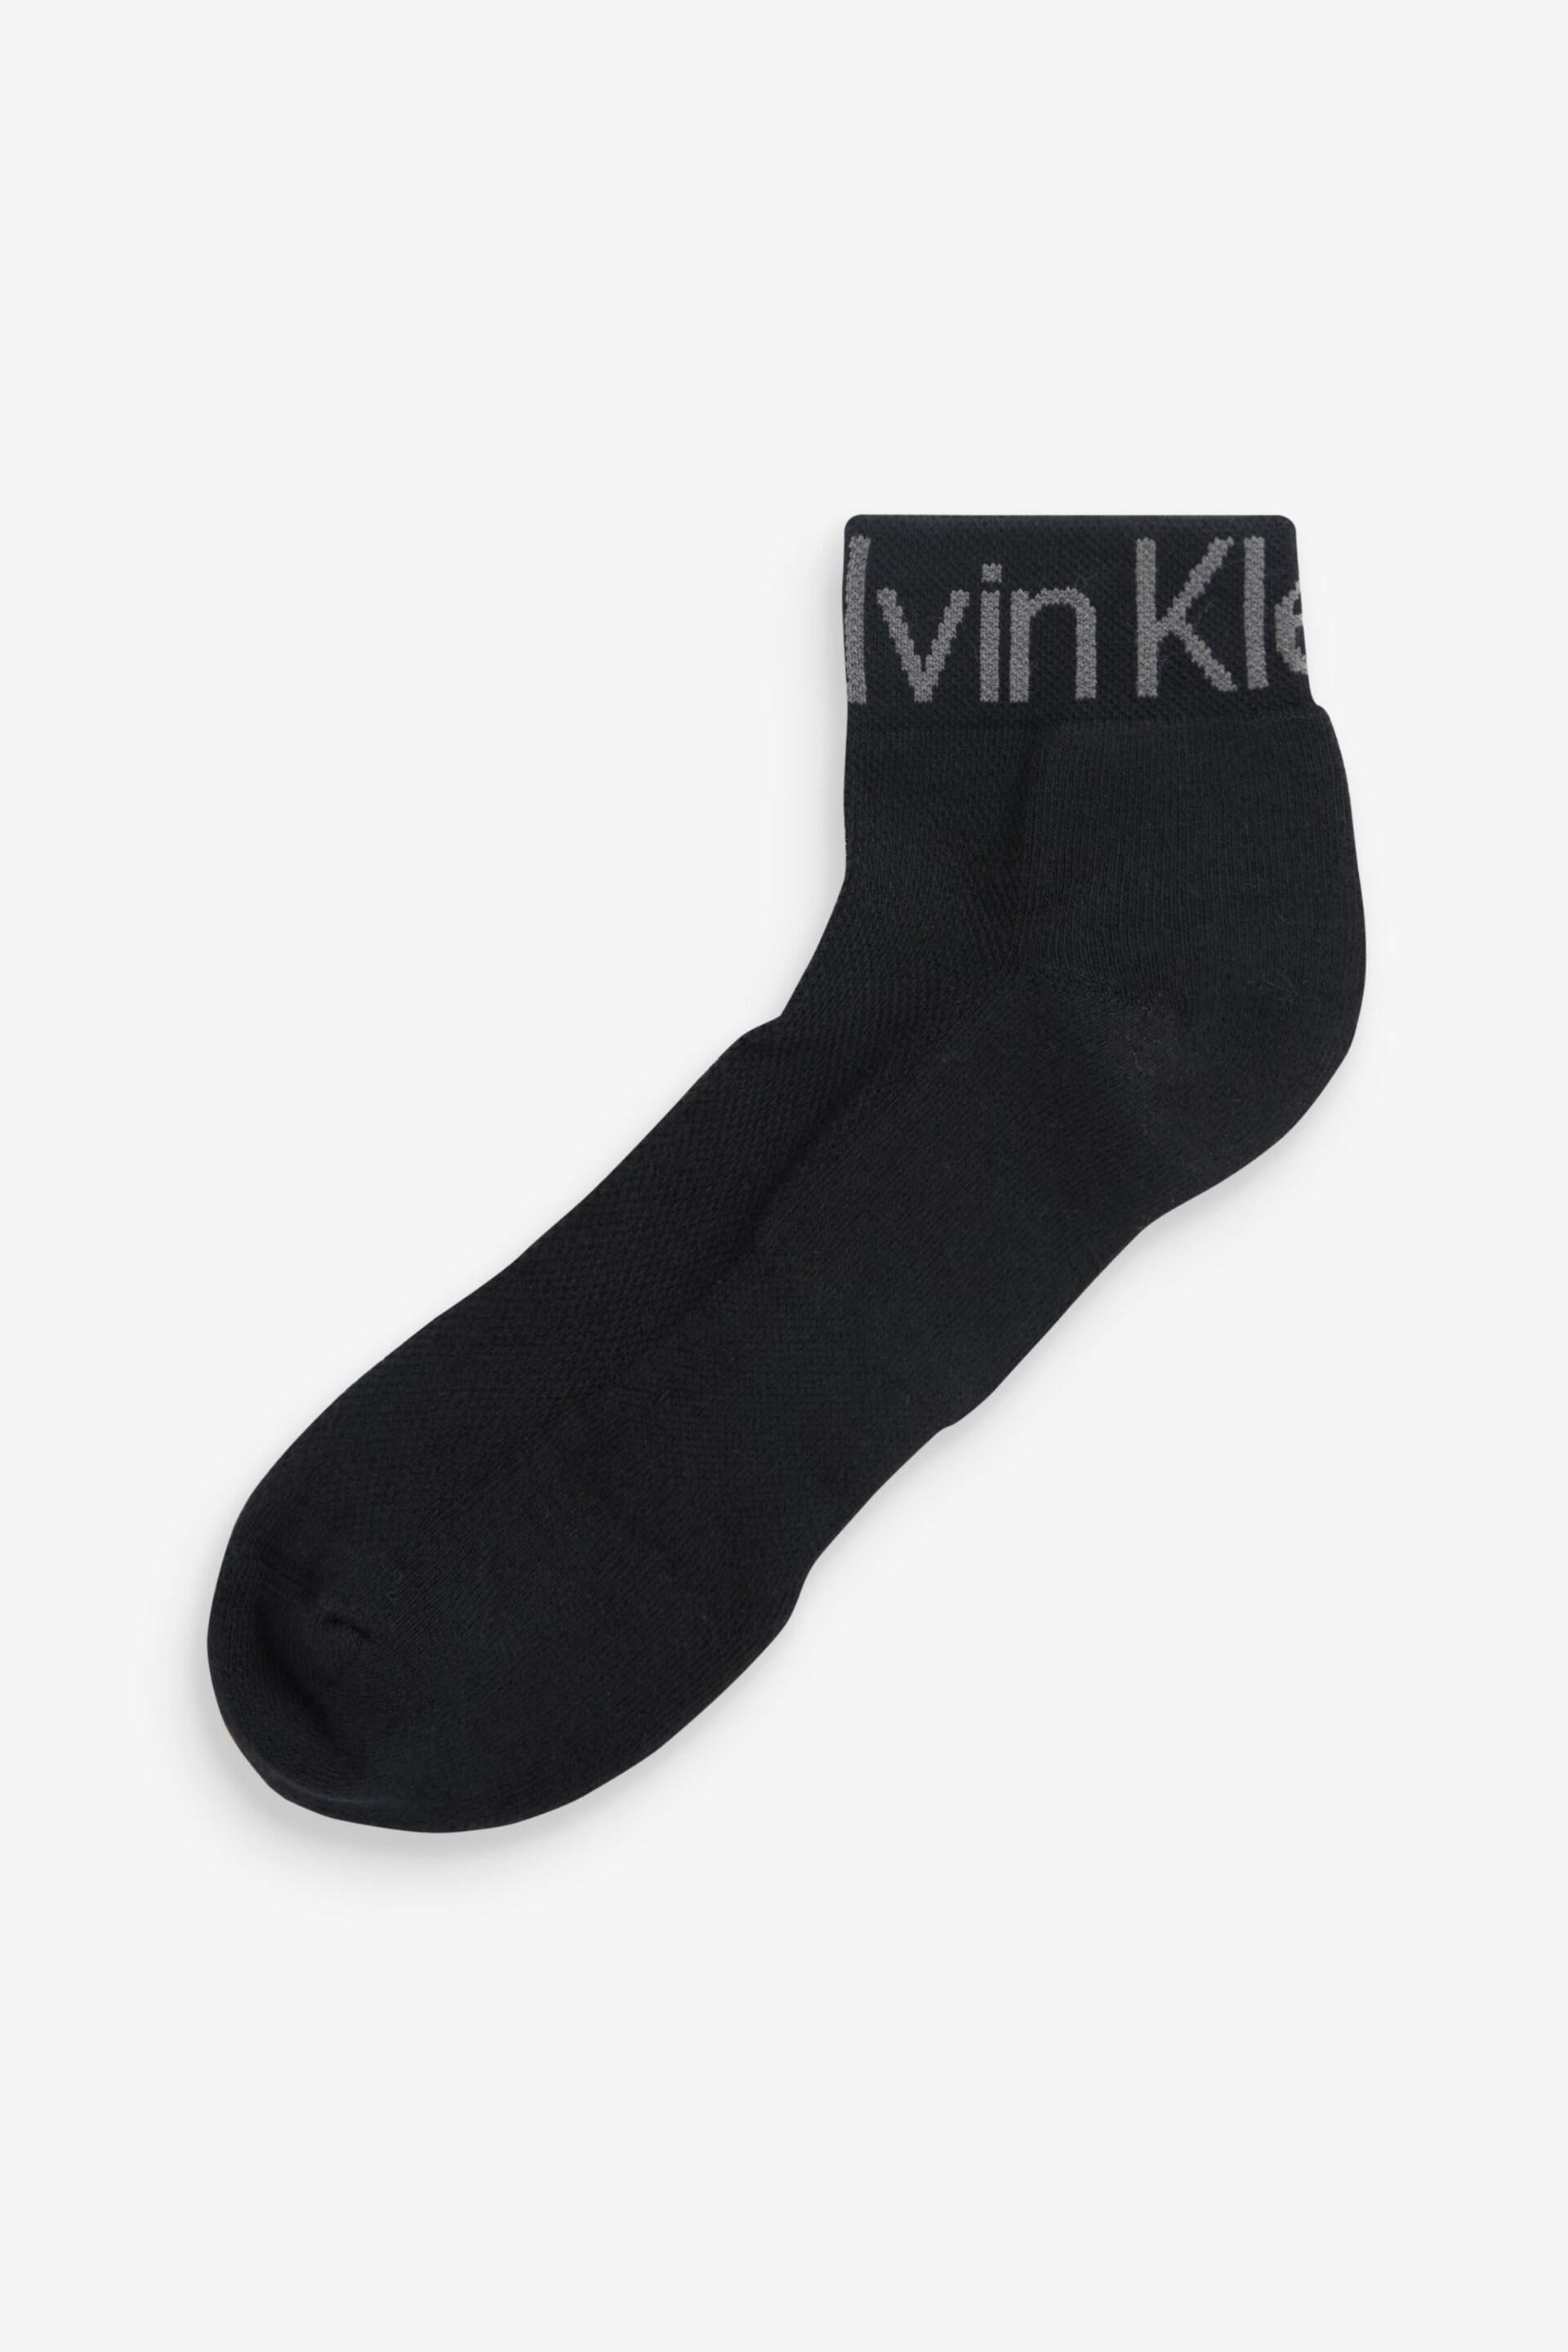 Calvin Klein Black Logo Quarter Socks 3 Pack - Image 3 of 5